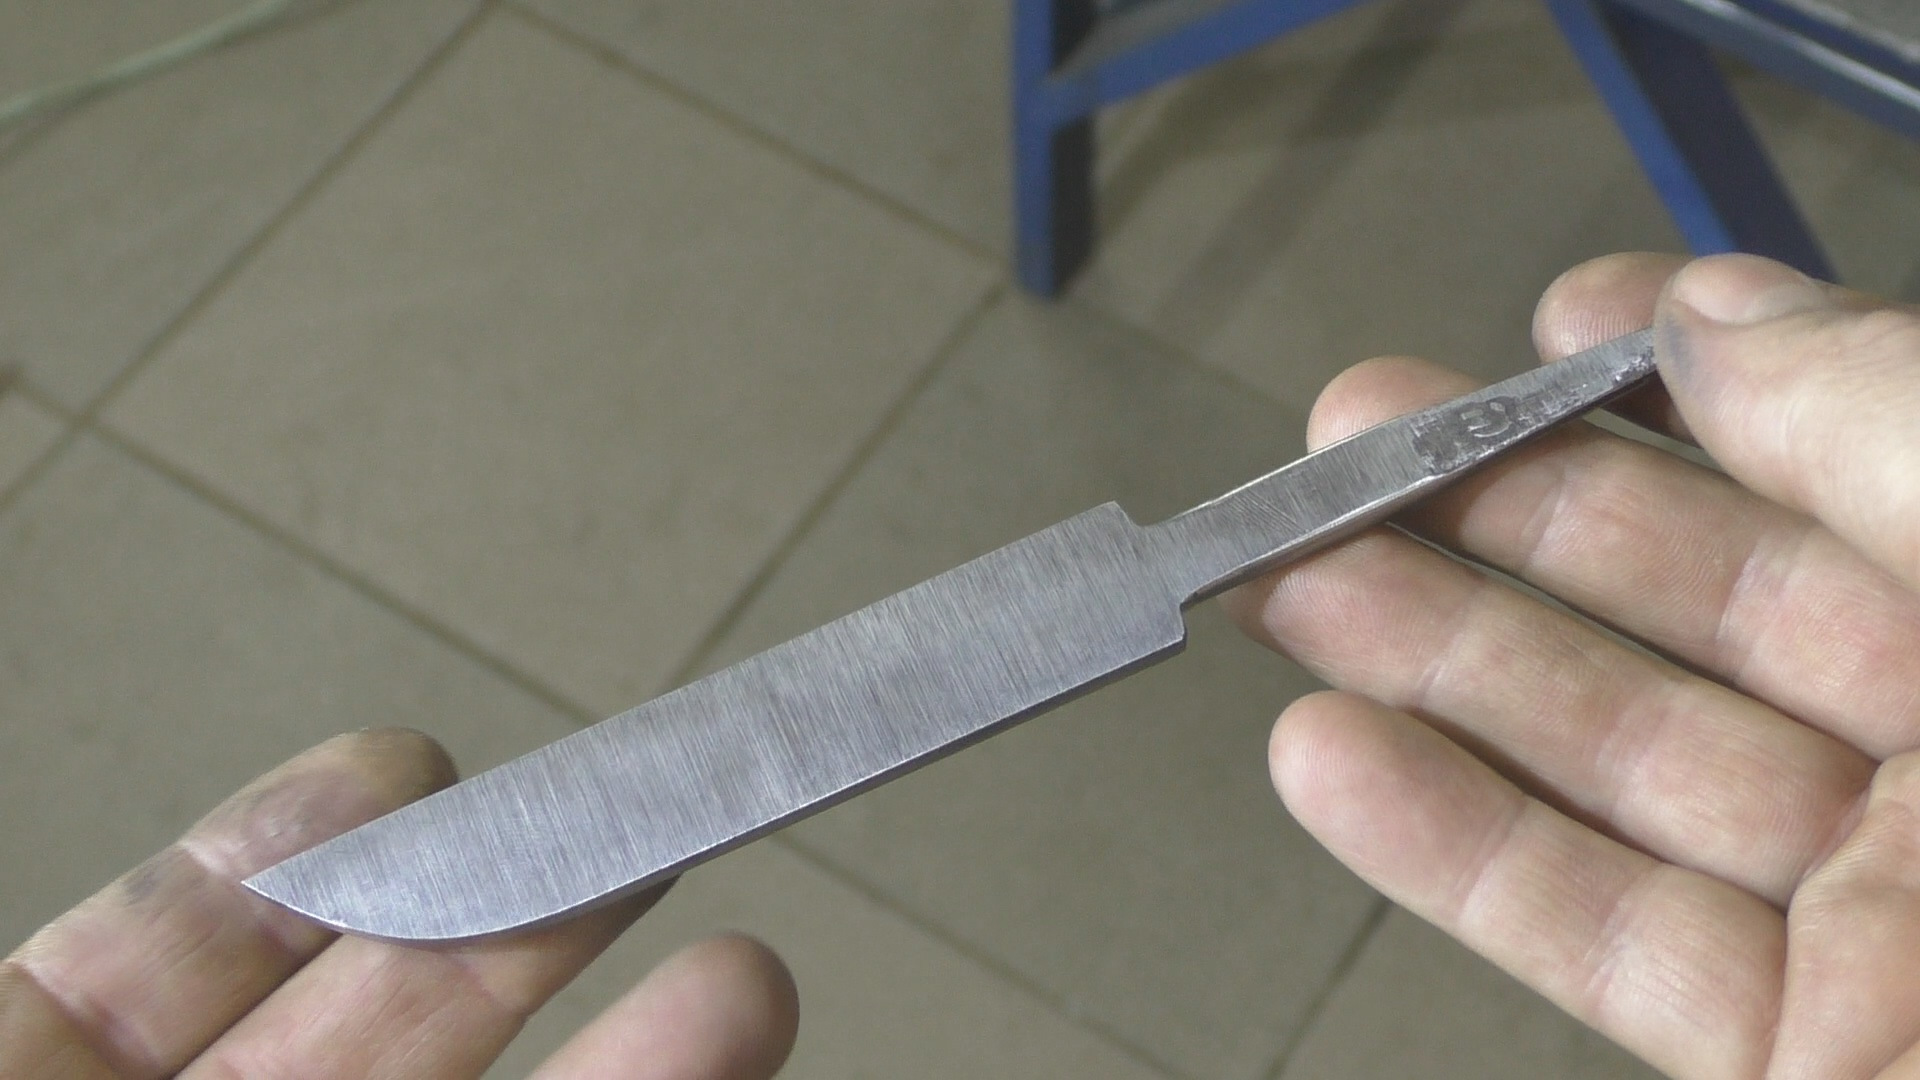 Ковка ножа: из чего лучше делать [4 вида ножей и материалов]